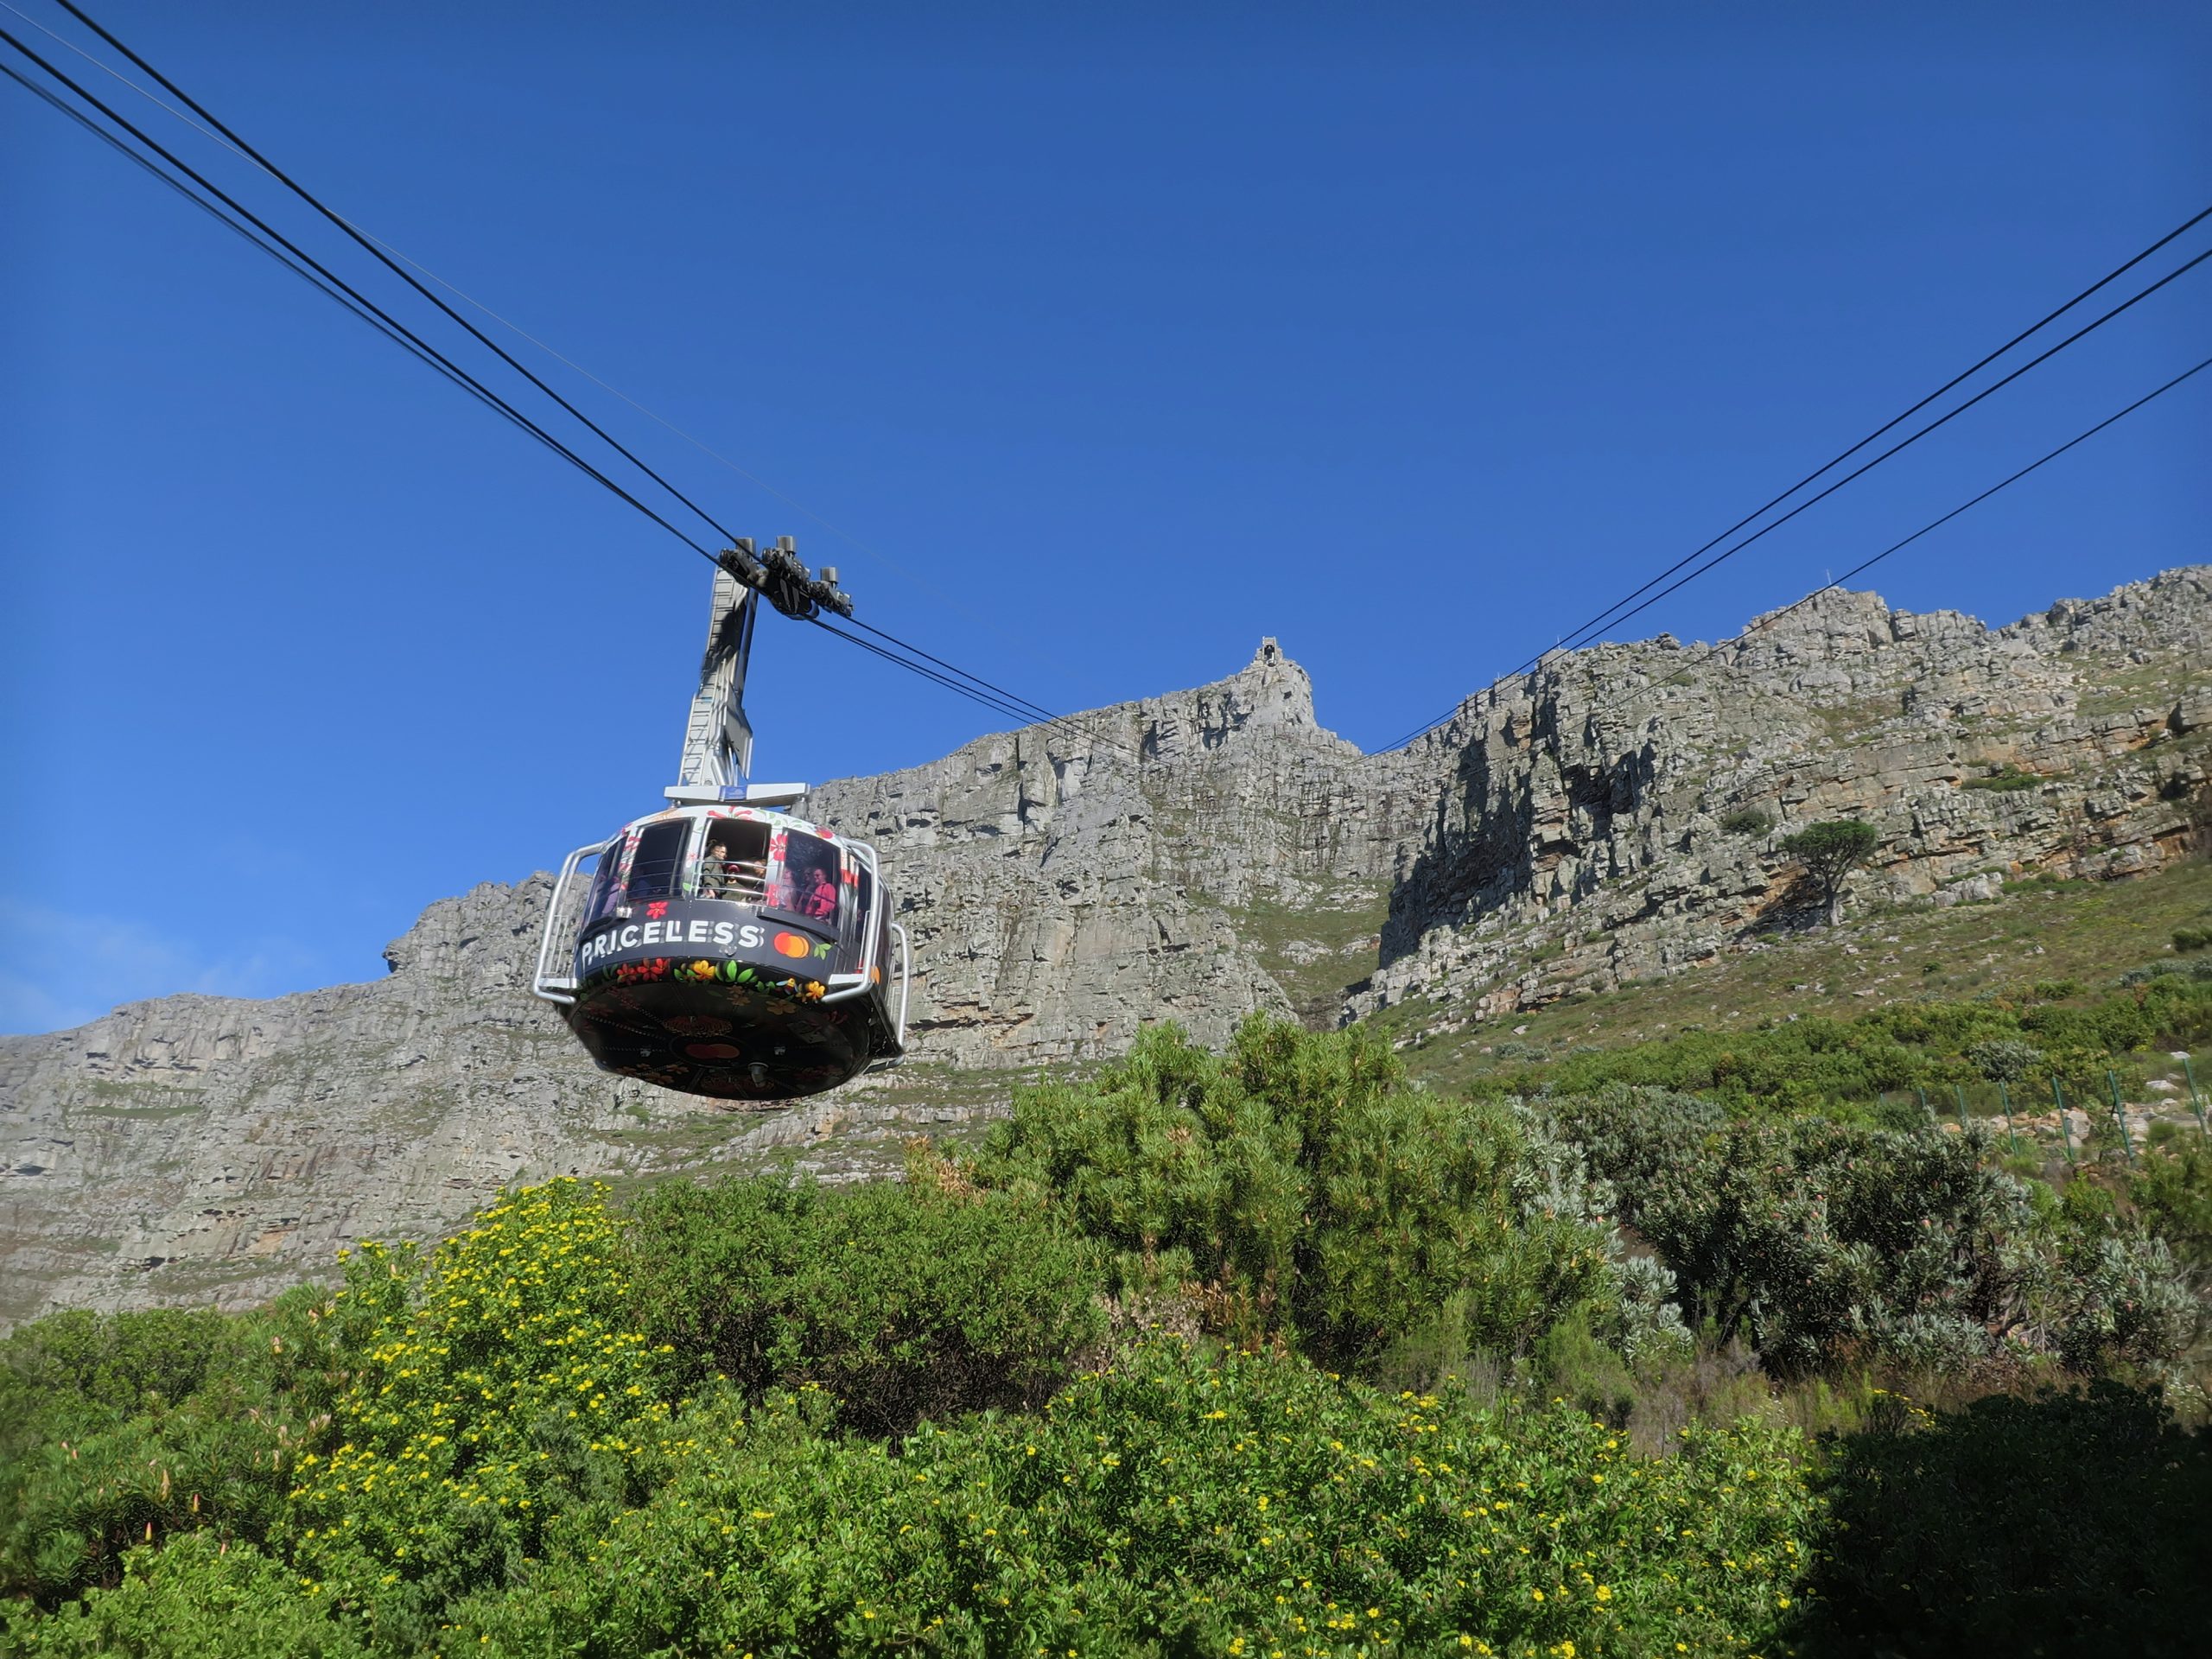 Le Cap, Afrique du Sud - Téléphérique pour accéder à Table Mountain